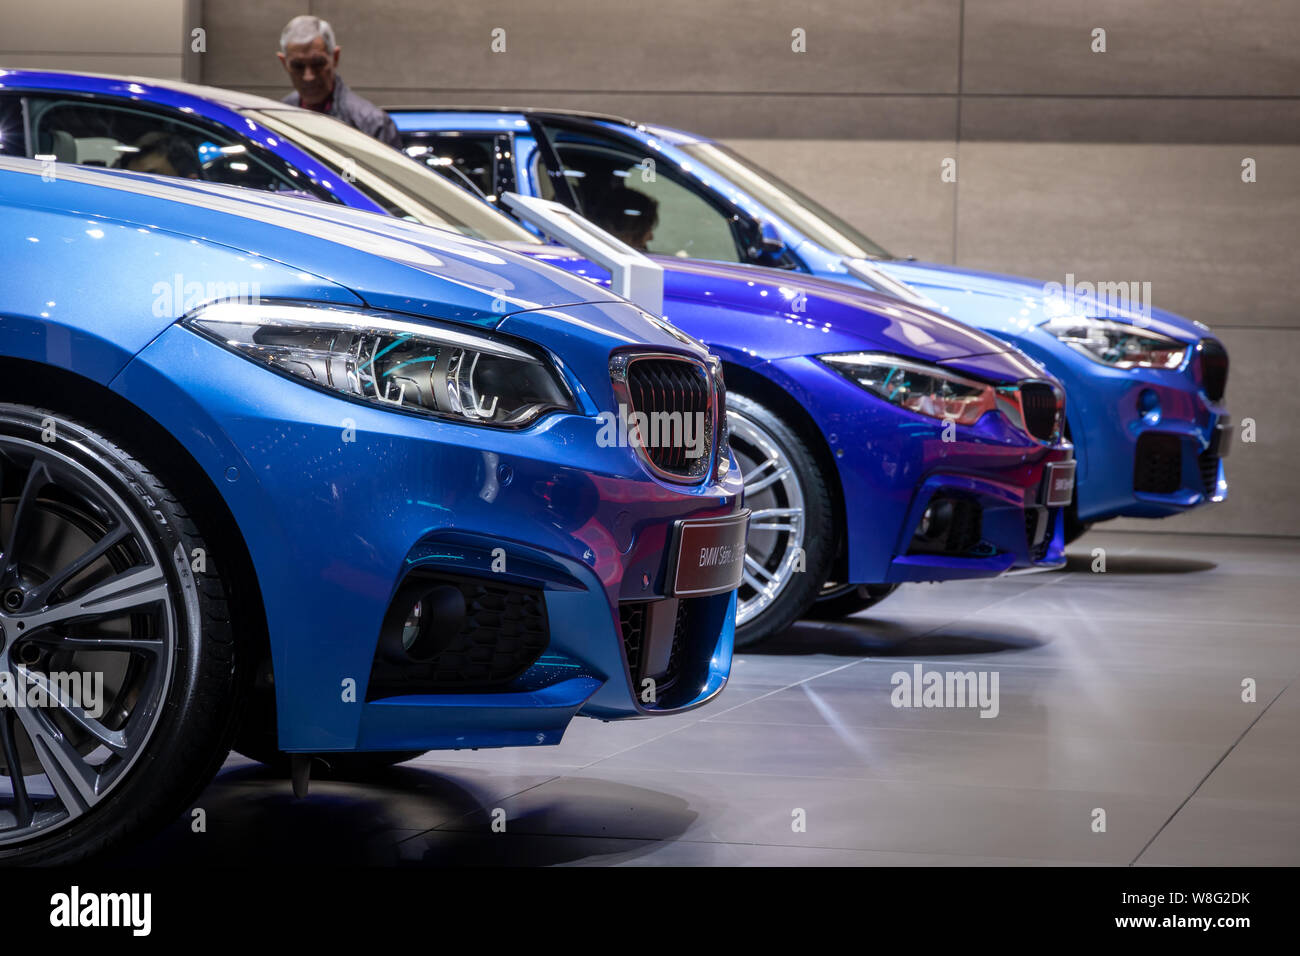 Genf, Schweiz - 6. März, 2019: Zeile der neuen BMW-Fahrzeugen auf dem 89. Internationalen Automobilsalon in Genf präsentiert. Stockfoto